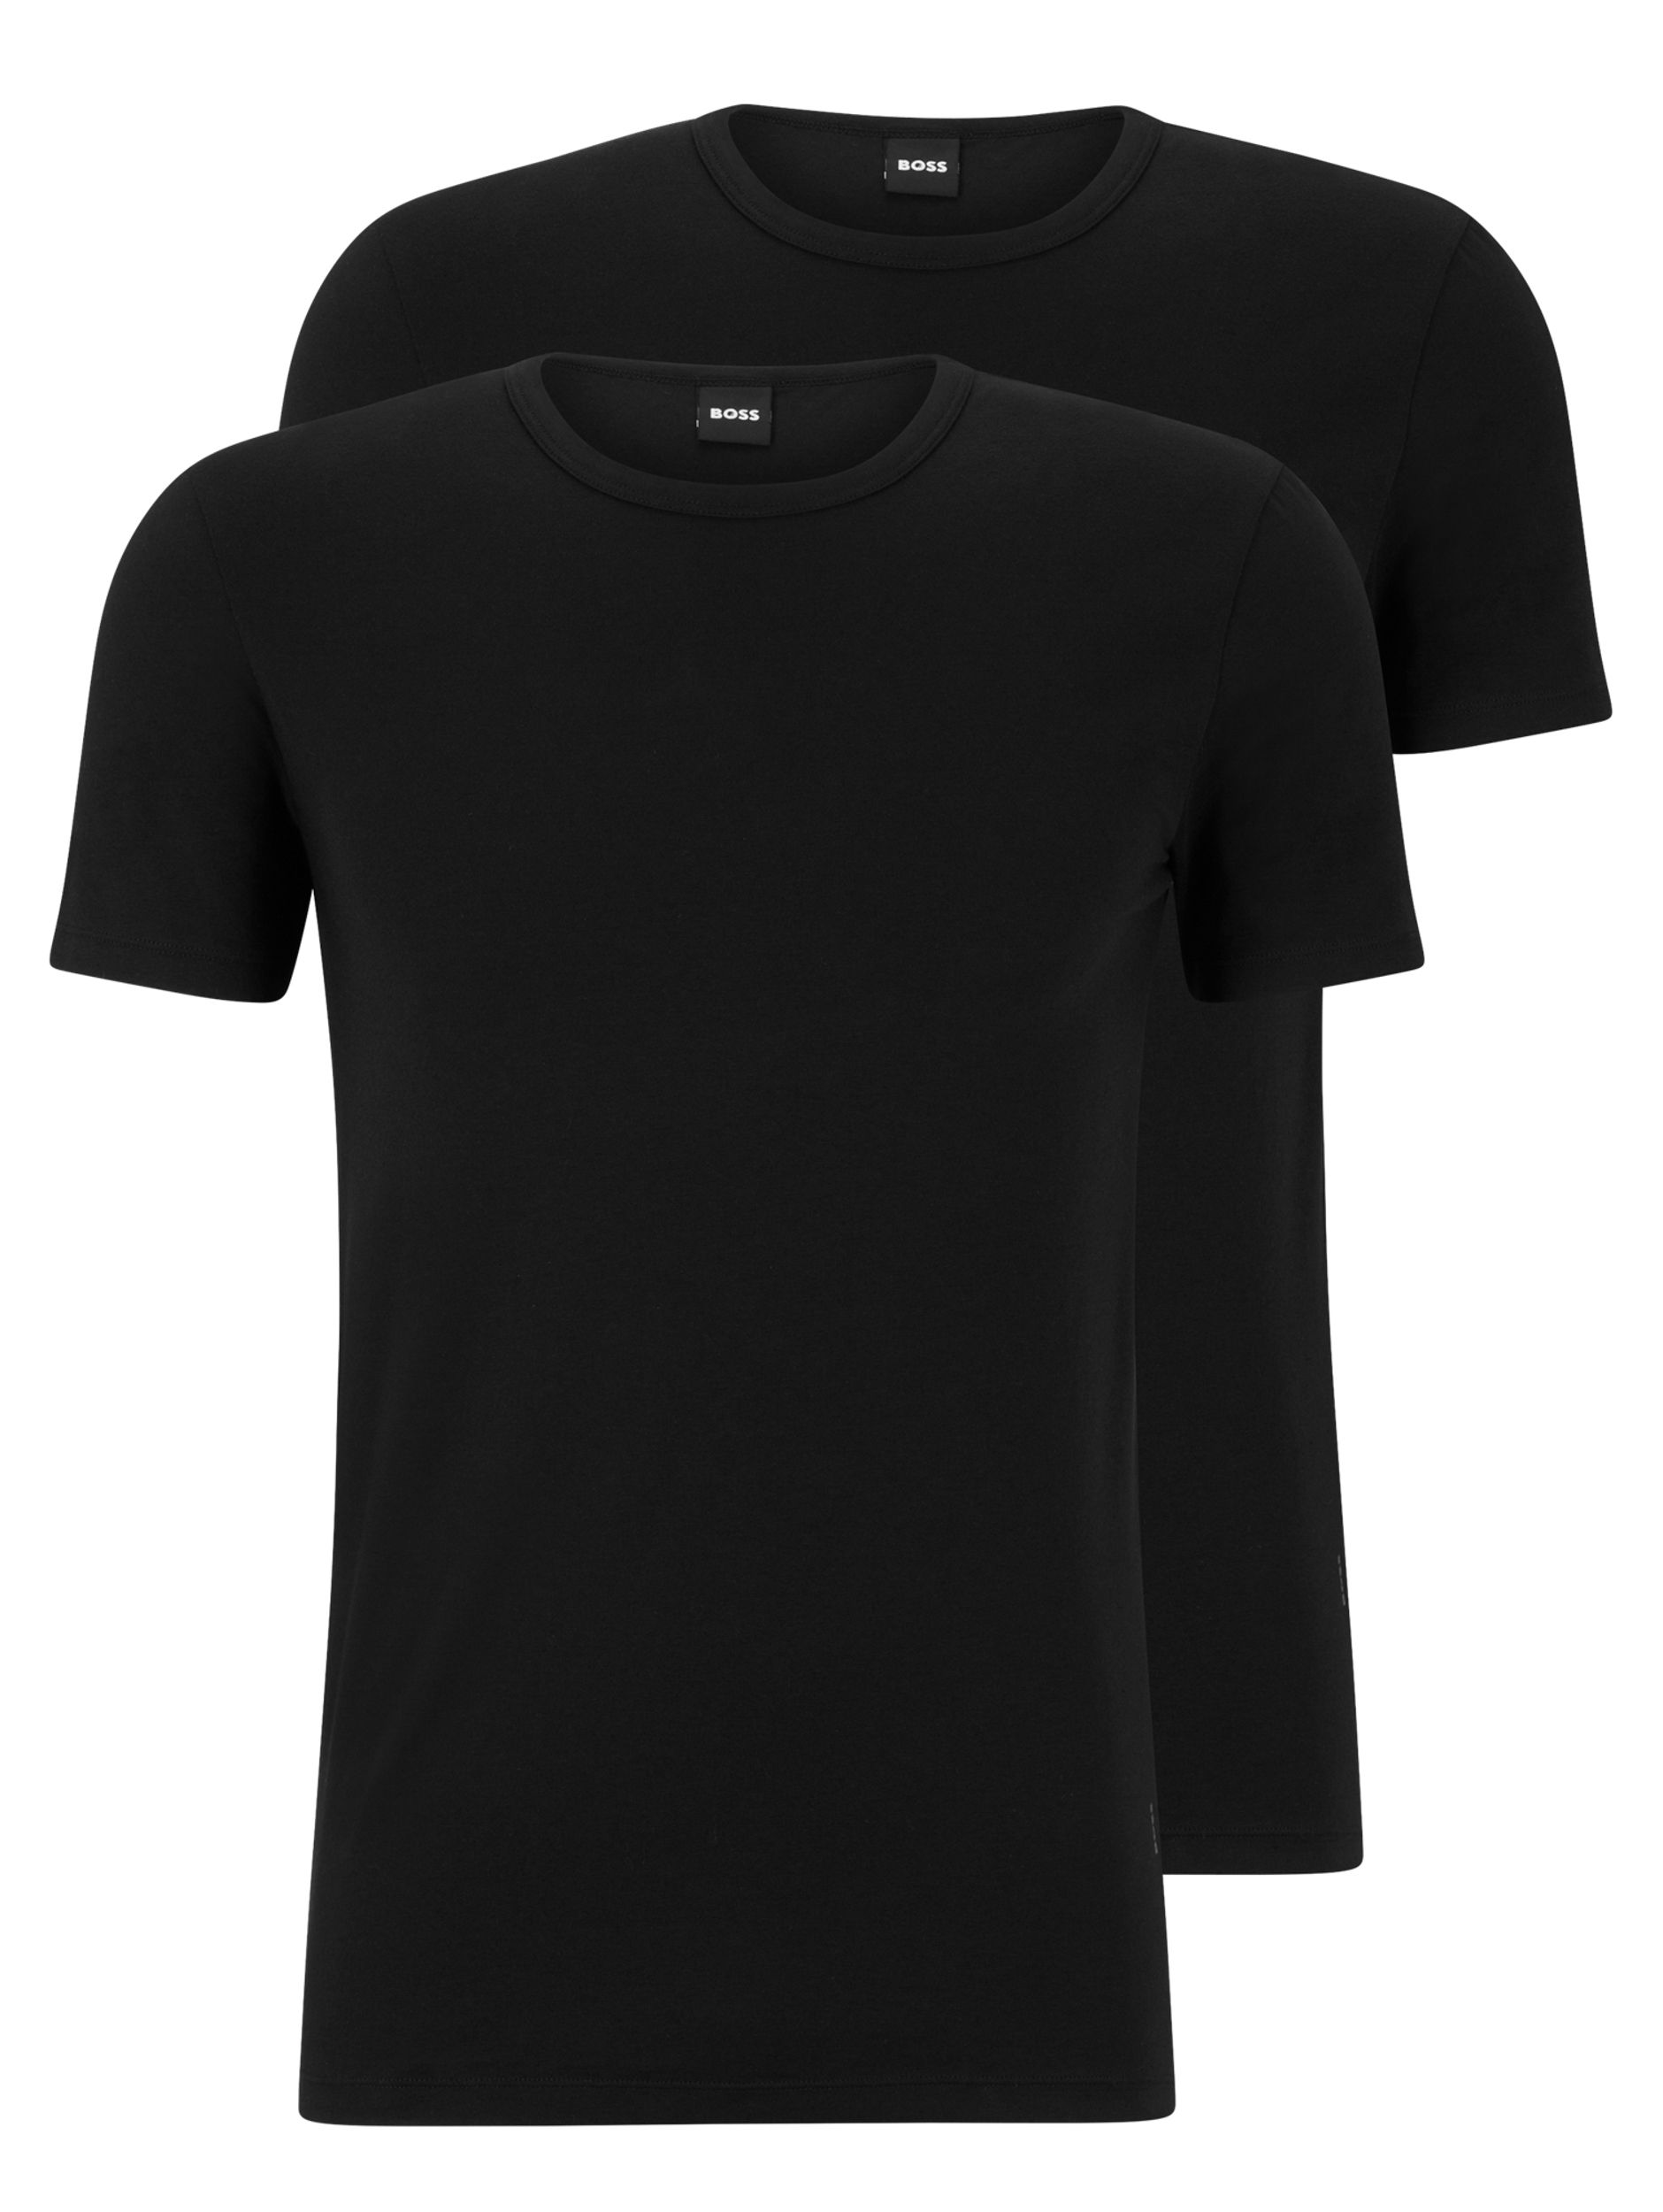 Hugo Boss Menswear R-neck 2 Pack T-shirt KM Zwart 082265-001-L